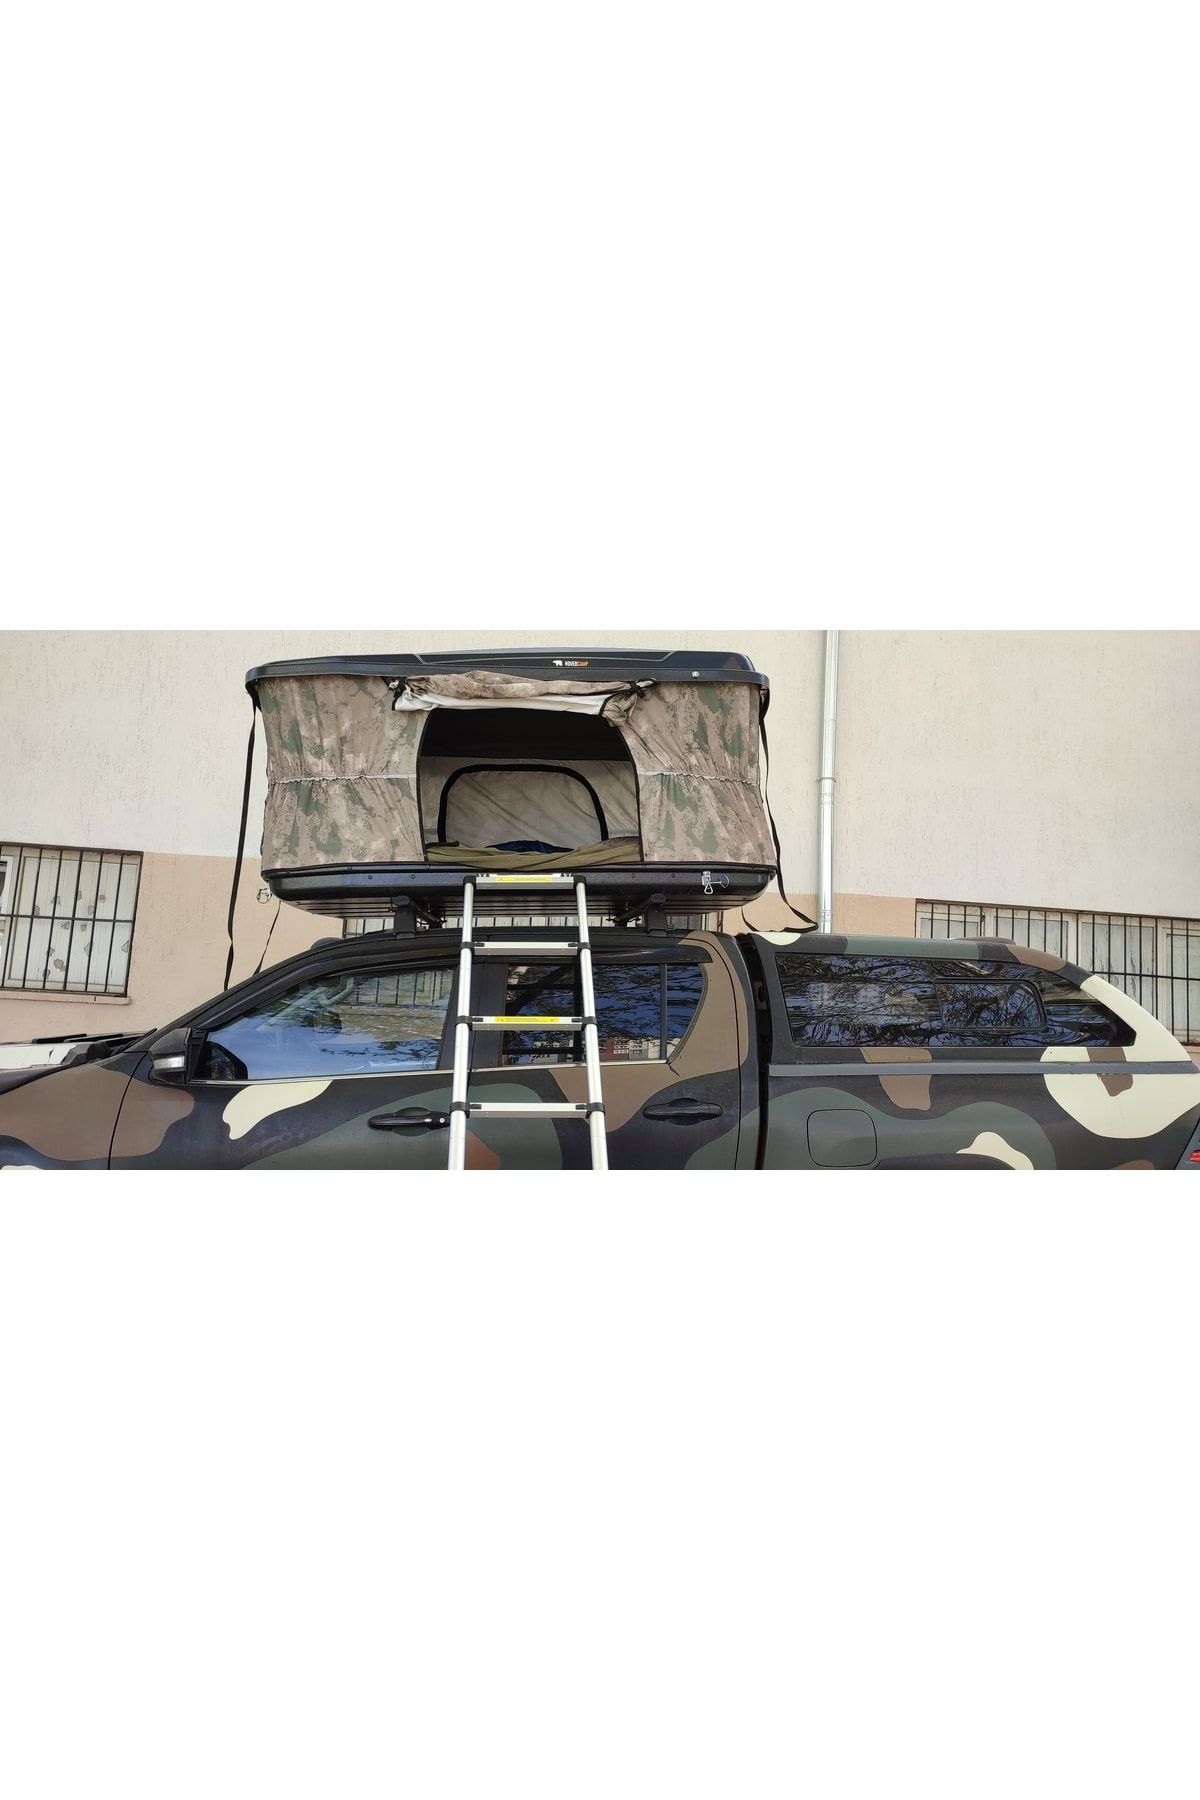 burfez Hovercamp 2 Kişilik Araç Üstü Çadır Rooftop Tent Tüm Araçlara Uygun 4 Mevsim Kullanılabilir